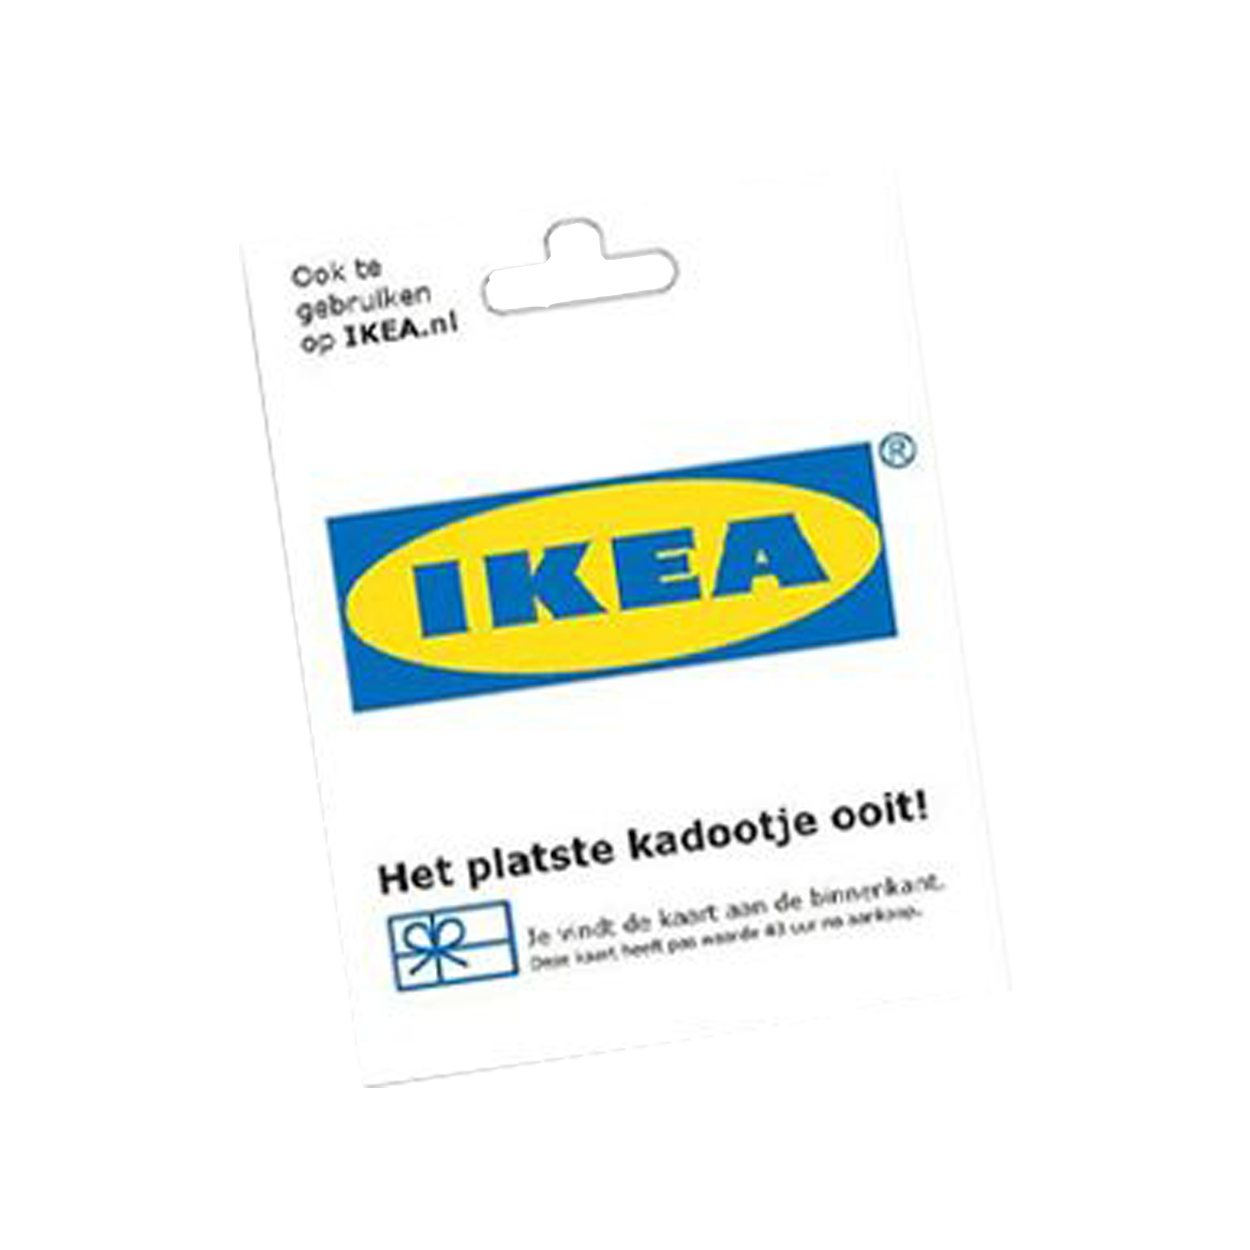 Doorbraak Microcomputer Meestal IKEA cadeaukaart